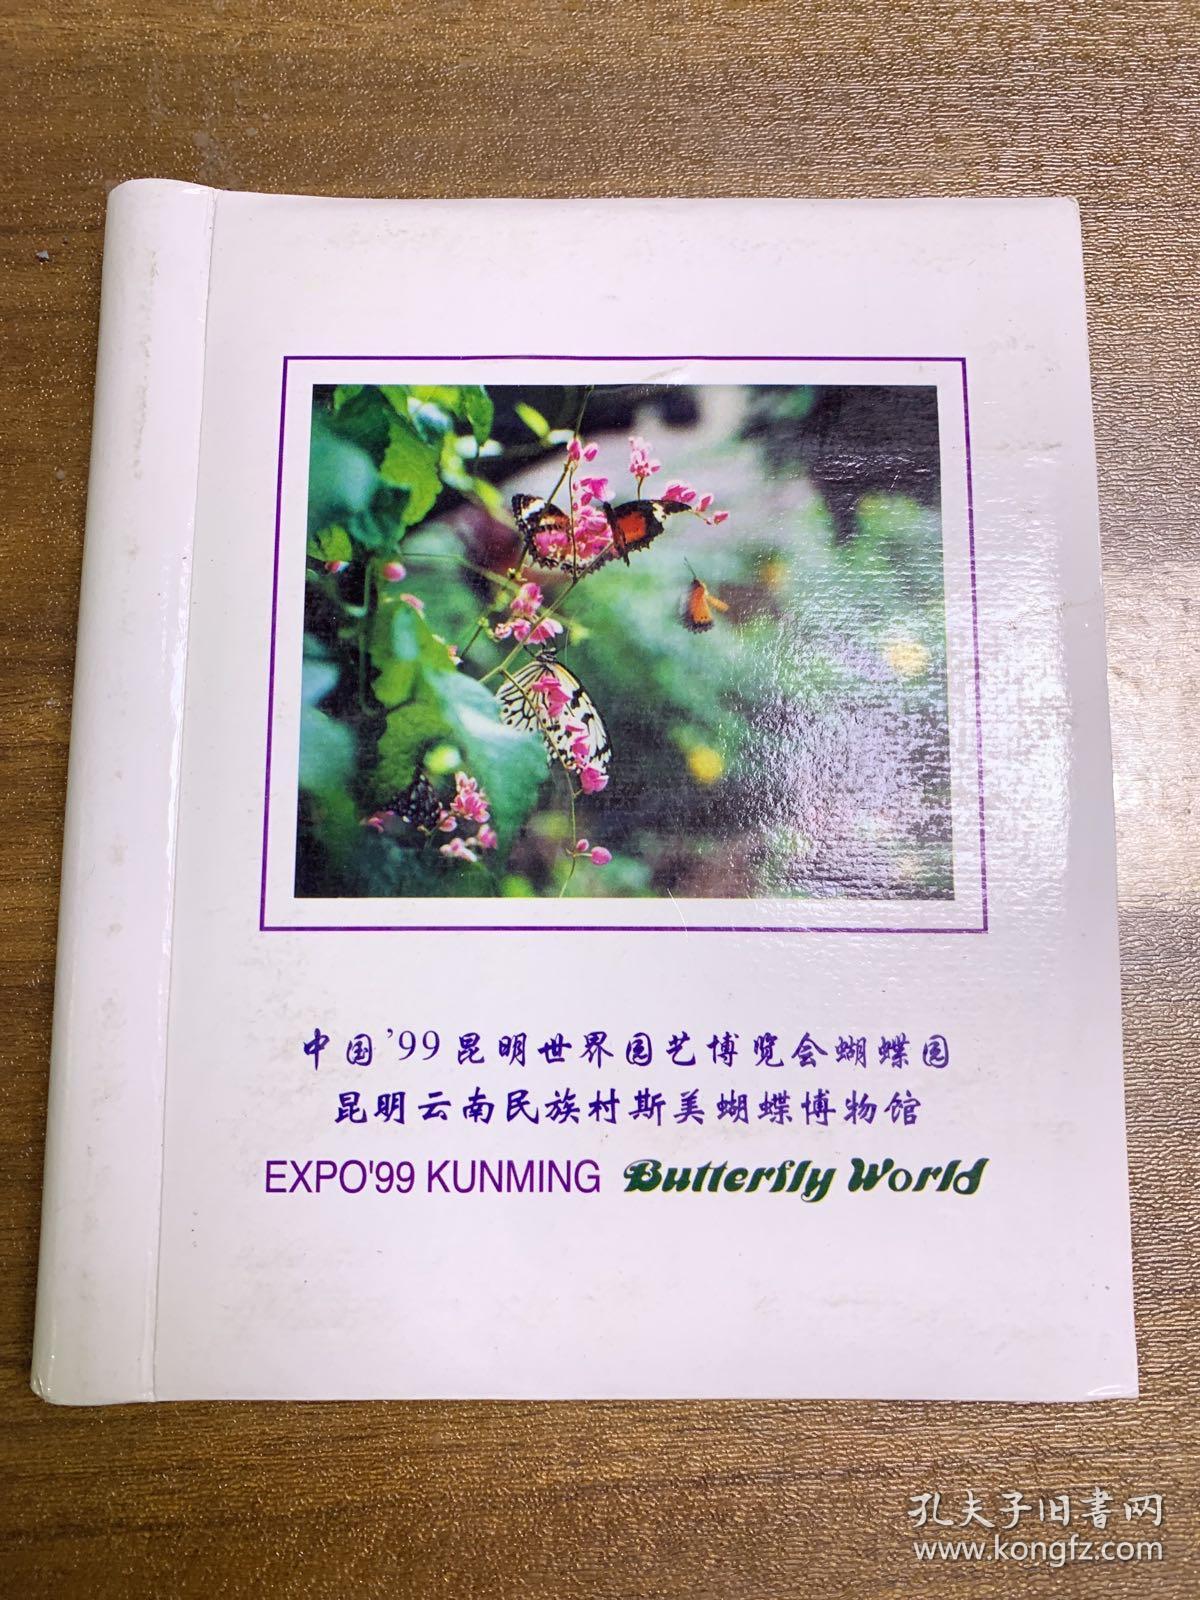 中国九九昆明世界园艺博览会蝴蝶园